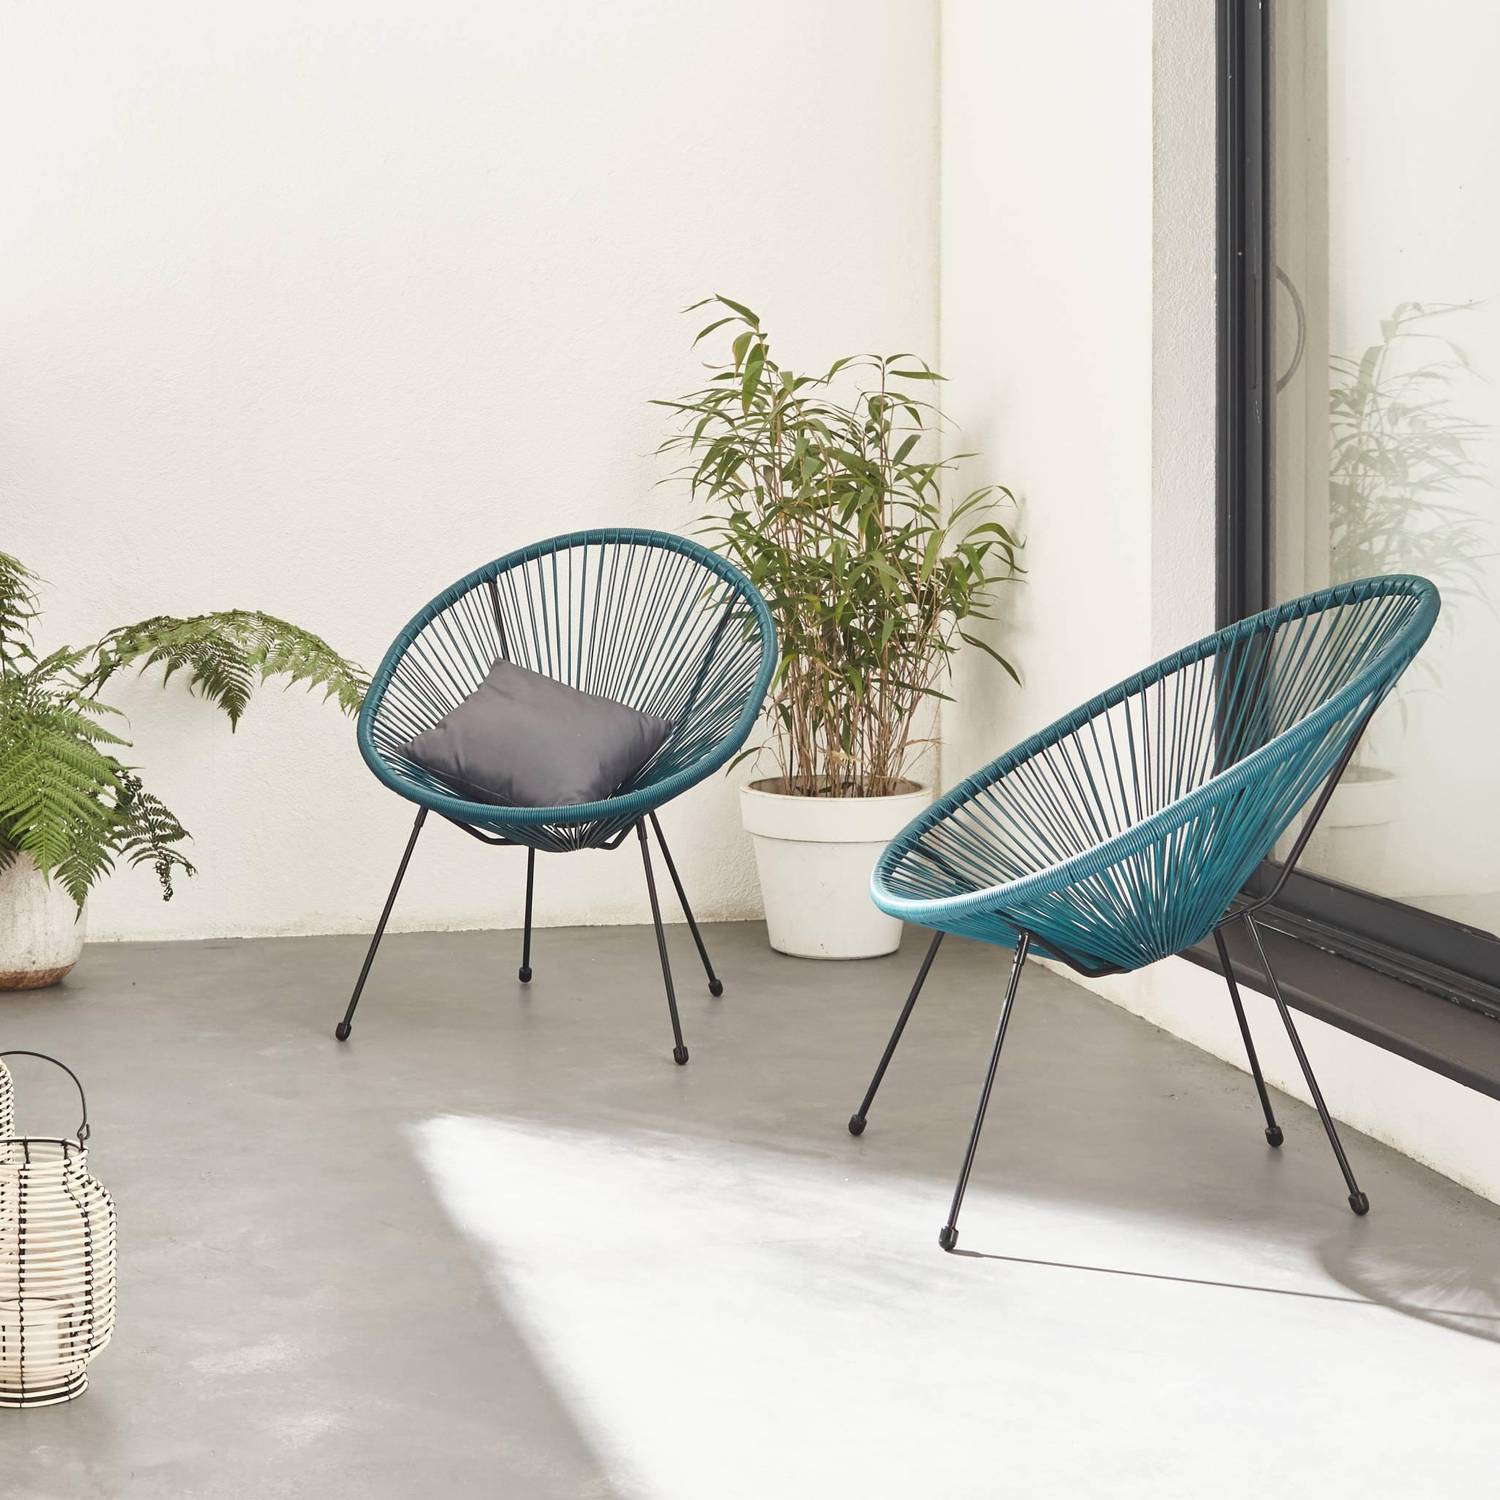 Set van 2 design stoelen ei-vormig - Acapulco Donker Turquoise  - Stoelen 4 poten retro design, plastic koorden, binnen/buiten Photo1